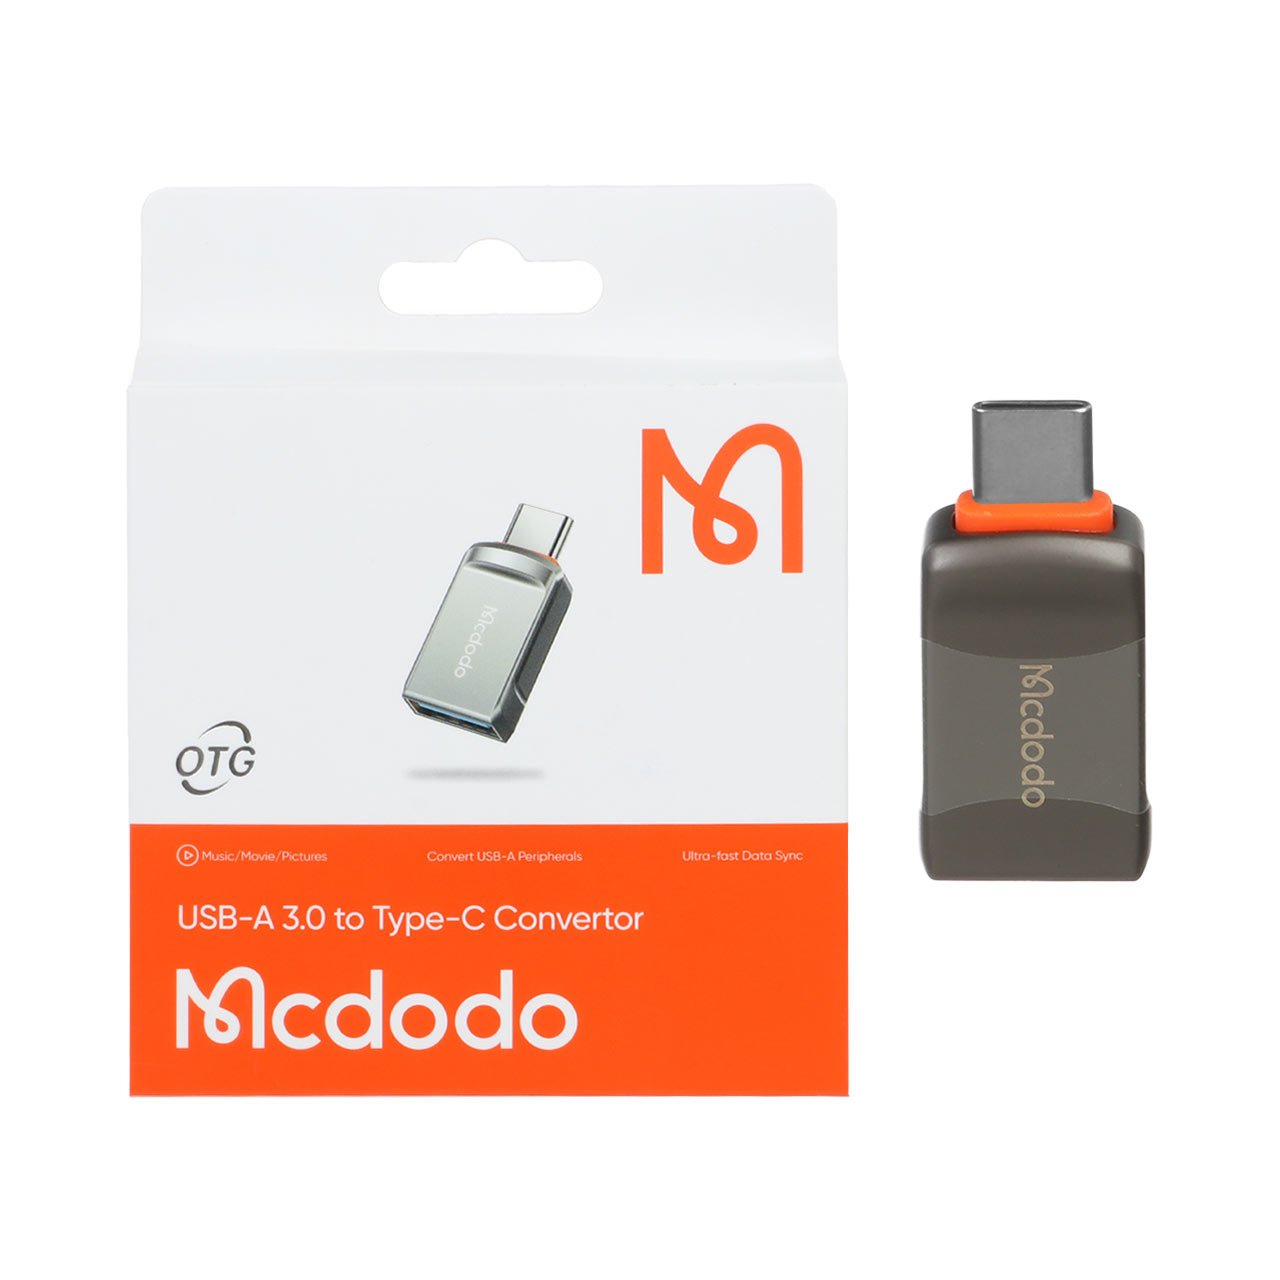 تبدیل Mcdodo OTG USB3.0 TO Type-C مدل OT-8730 - خاکستری